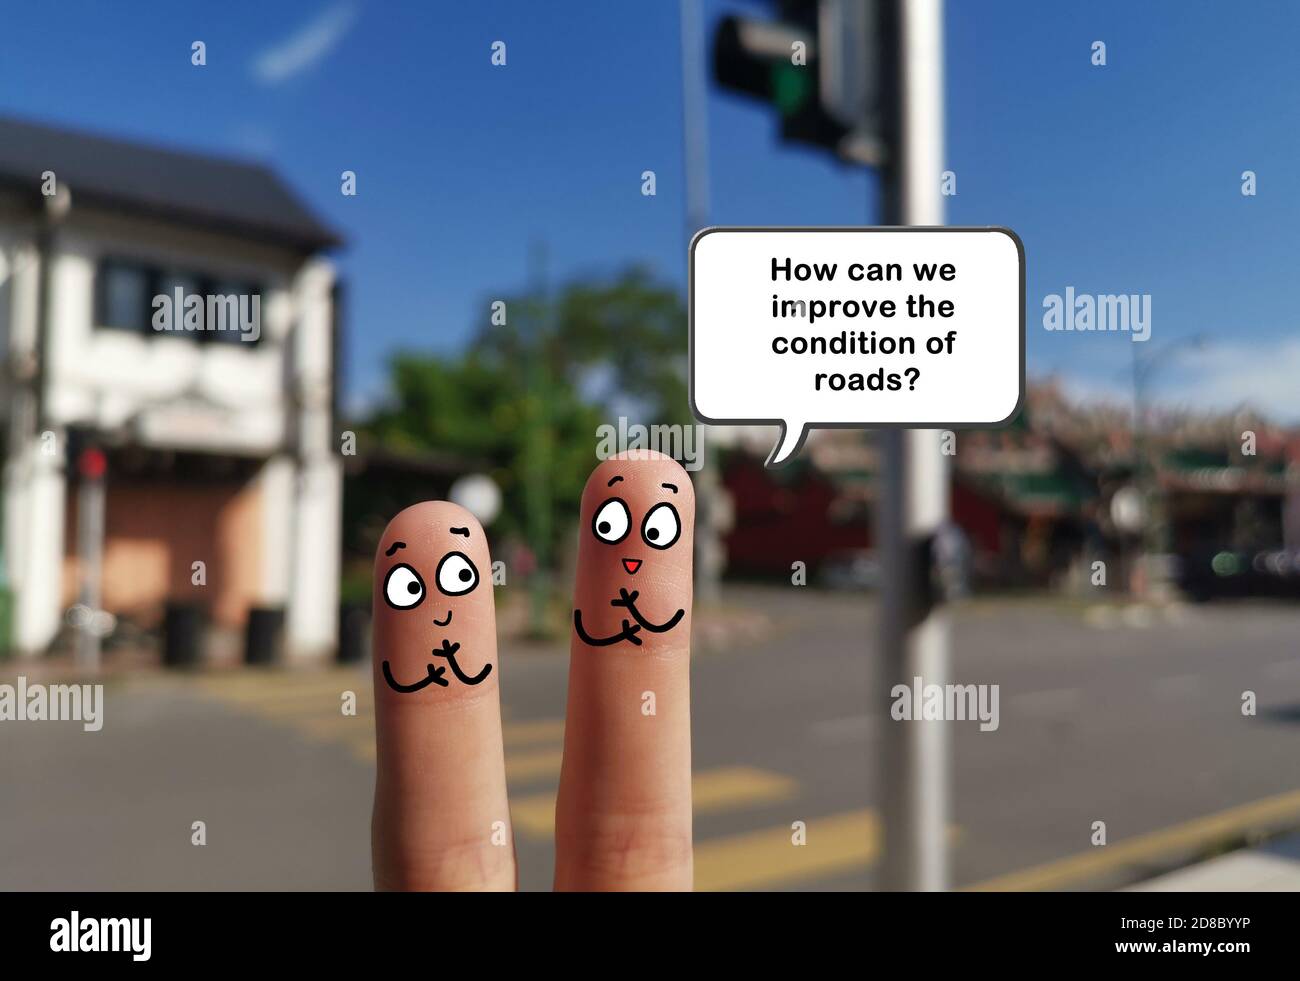 Zwei Finger sind als zwei Personen dekoriert. Sie diskutieren über Möglichkeiten, den Straßenzustand zu verbessern. Stockfoto